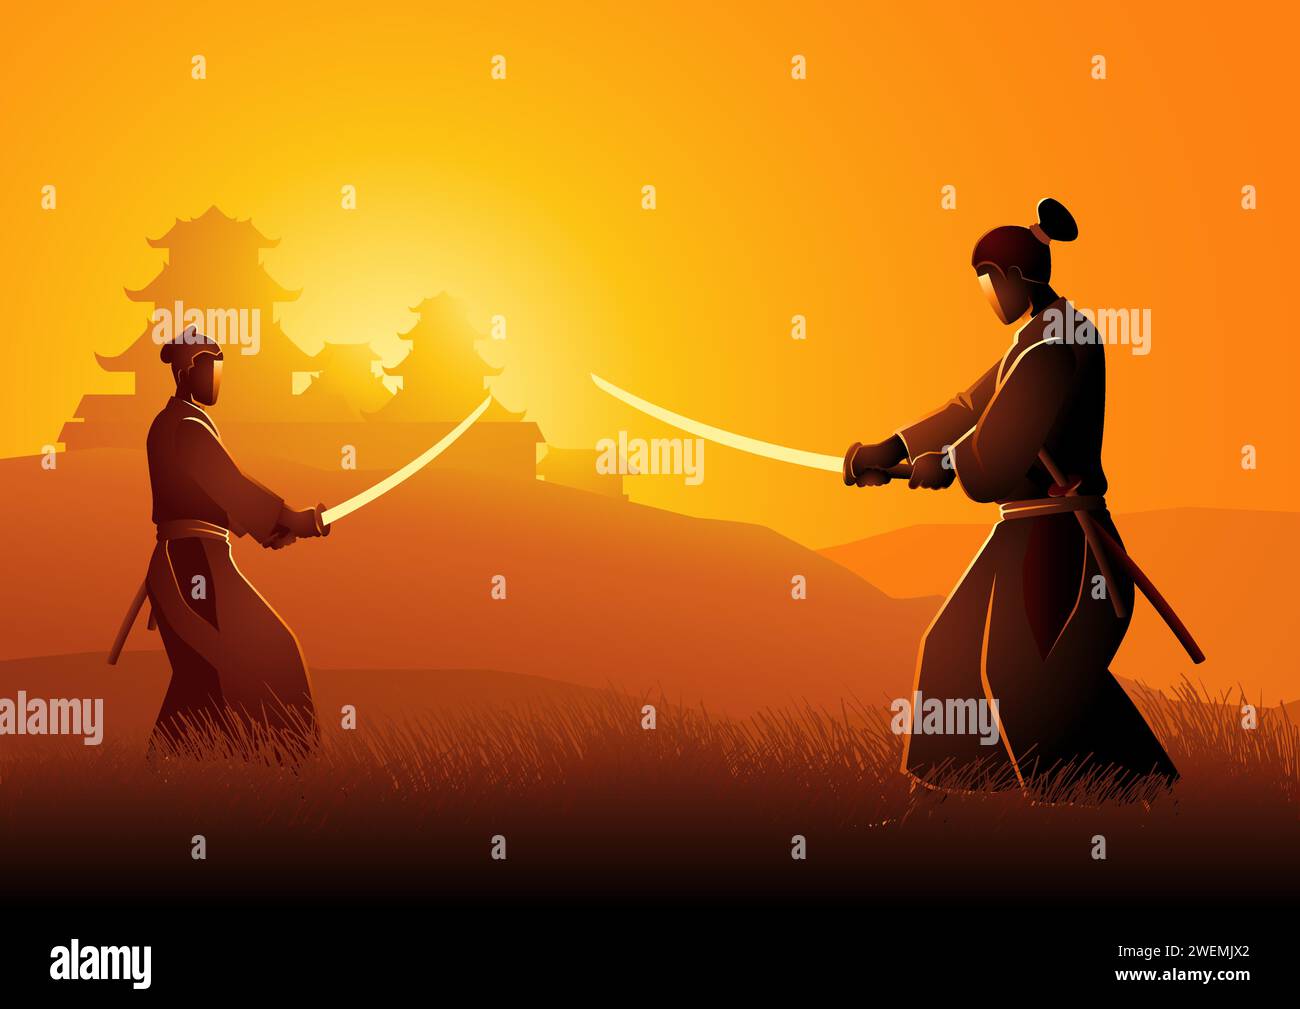 Illustrazione vettoriale di due Samurai in posizione duale l'uno di fronte all'altro su prato Illustrazione Vettoriale